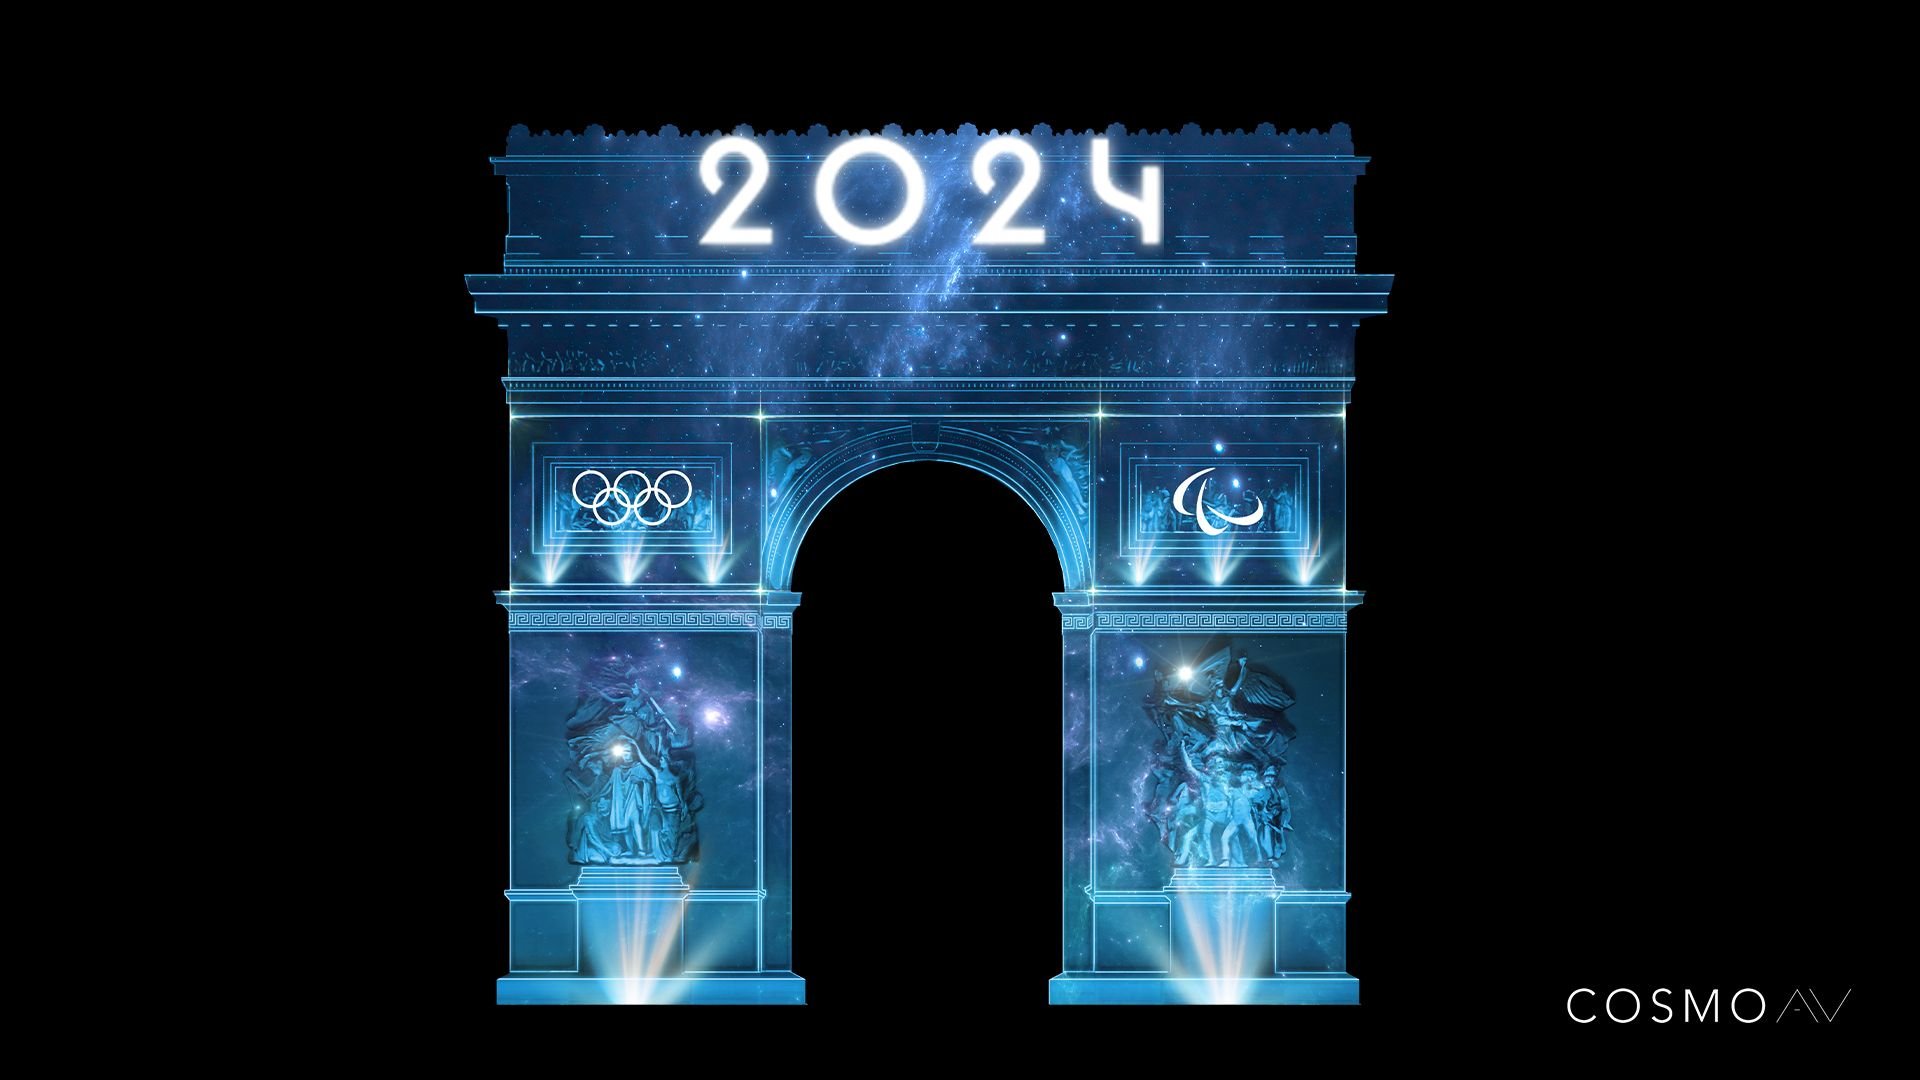 Le mapping vidéo sur l'Arc de Triomphe aura pour thème les JO, et notamment la transformation de la capitale pour accueillir athlètes et touristes. Cosmo AV